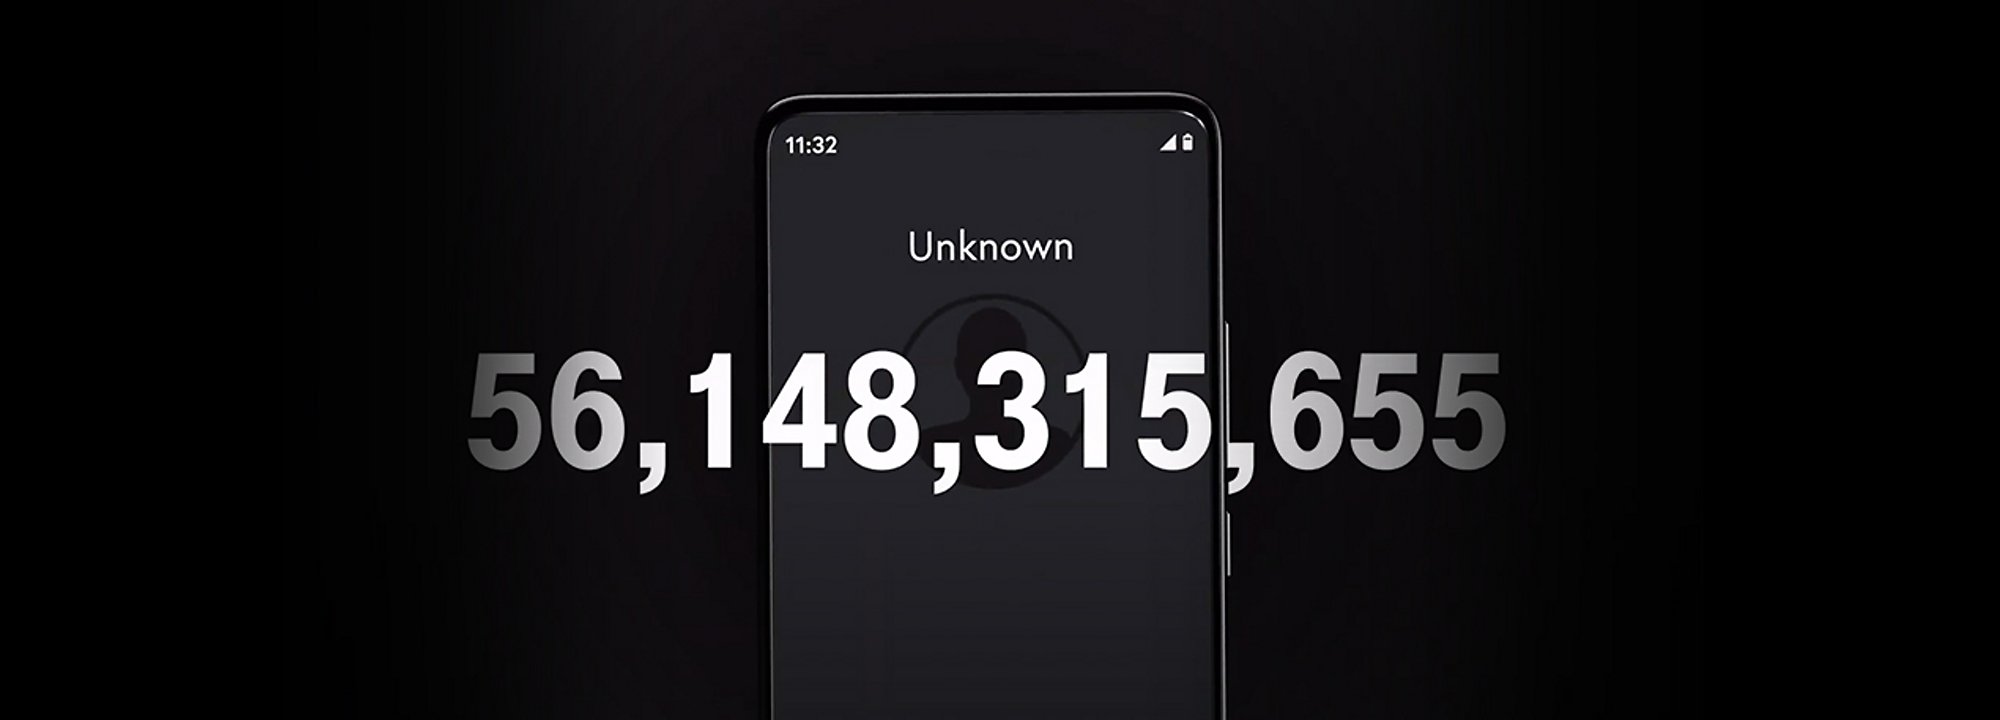 Un teléfono mostrando una llamada de un número desconocido y el número 56,148,315,655 superpuesto encima